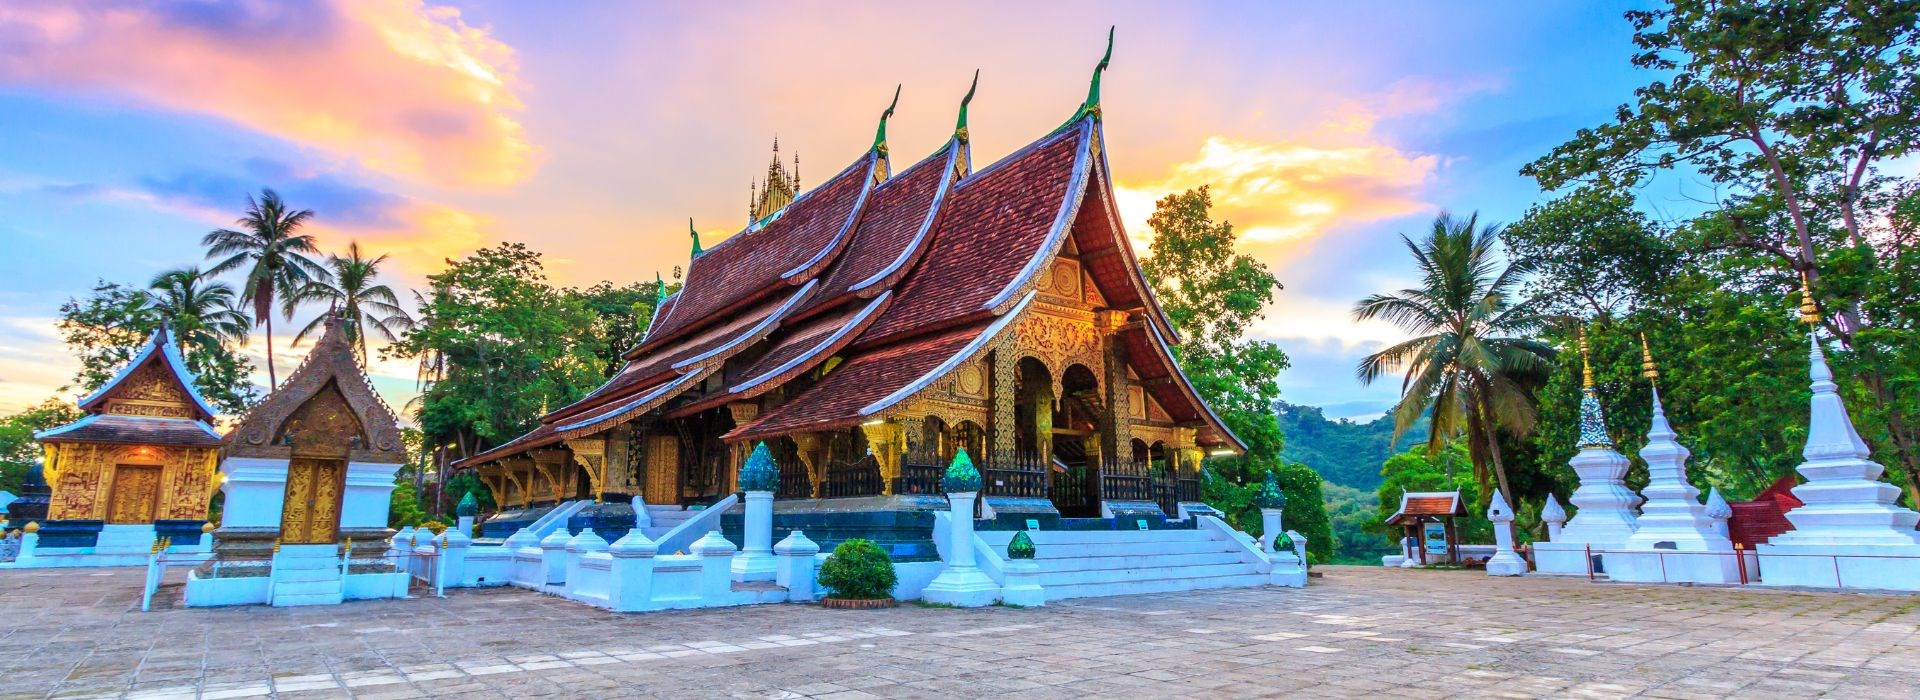 Séjour Vientiane entre solos Laos